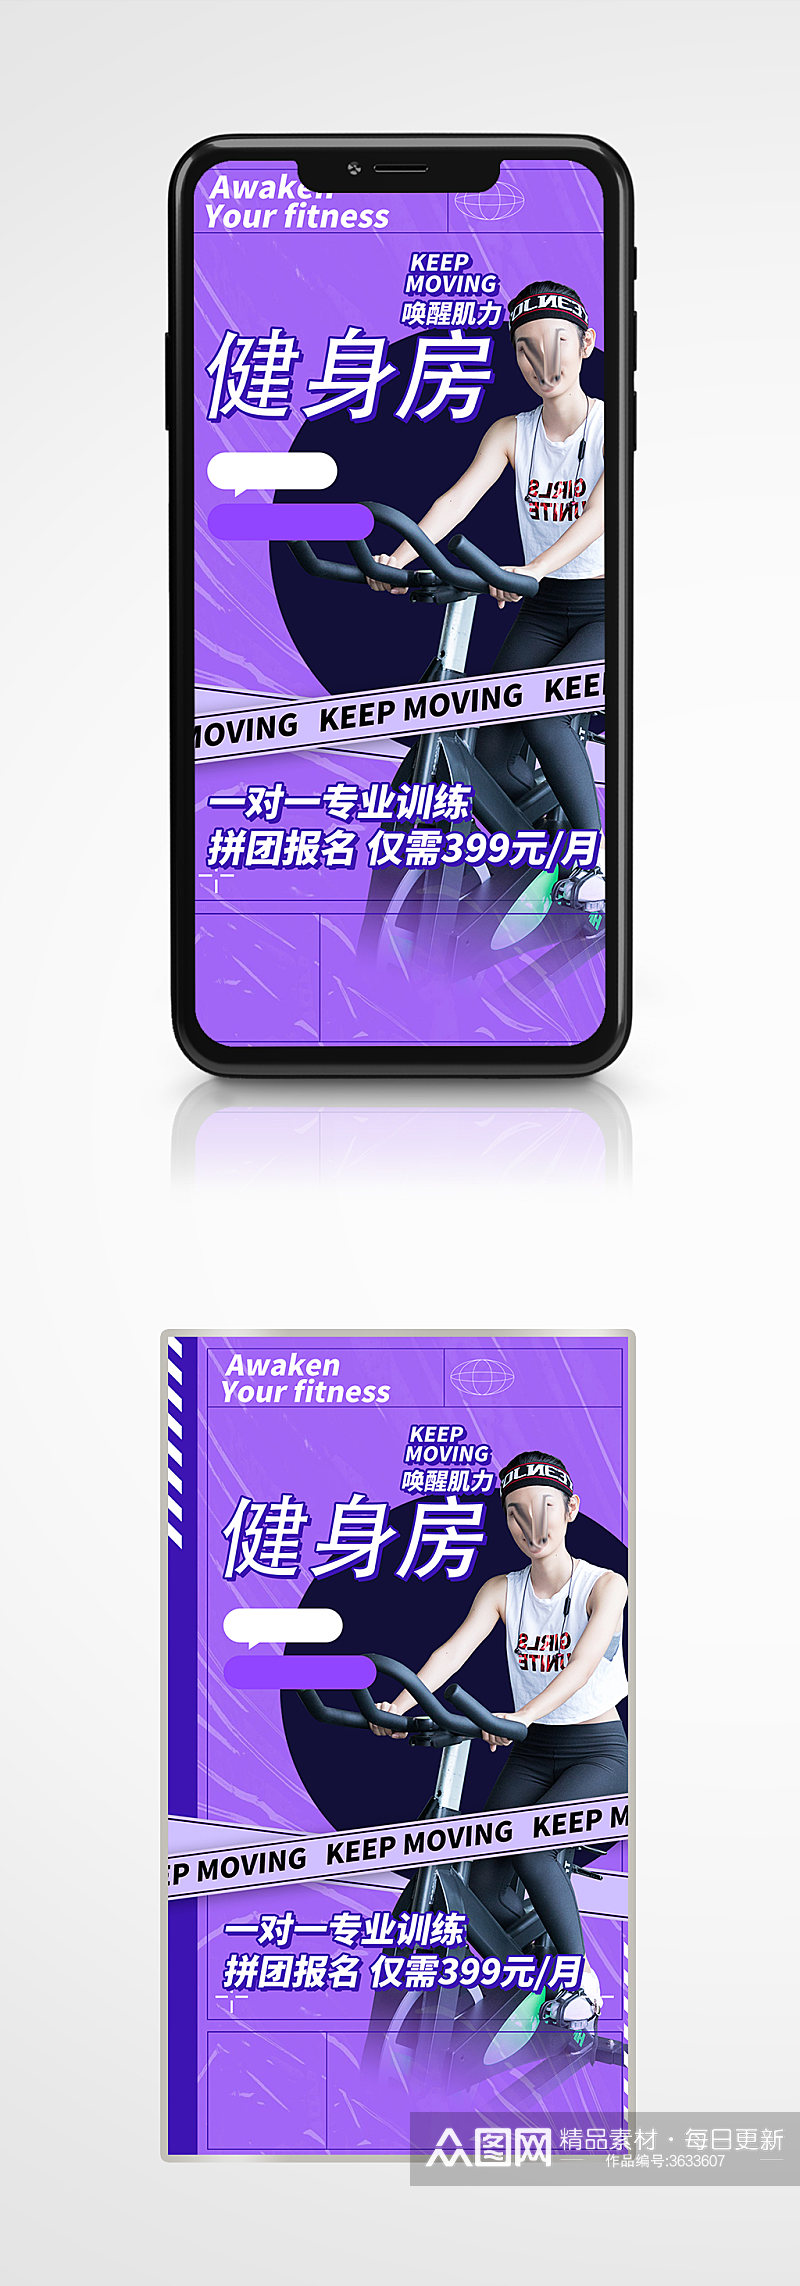 健身房优惠时尚手机海报紫色运动会员卡素材